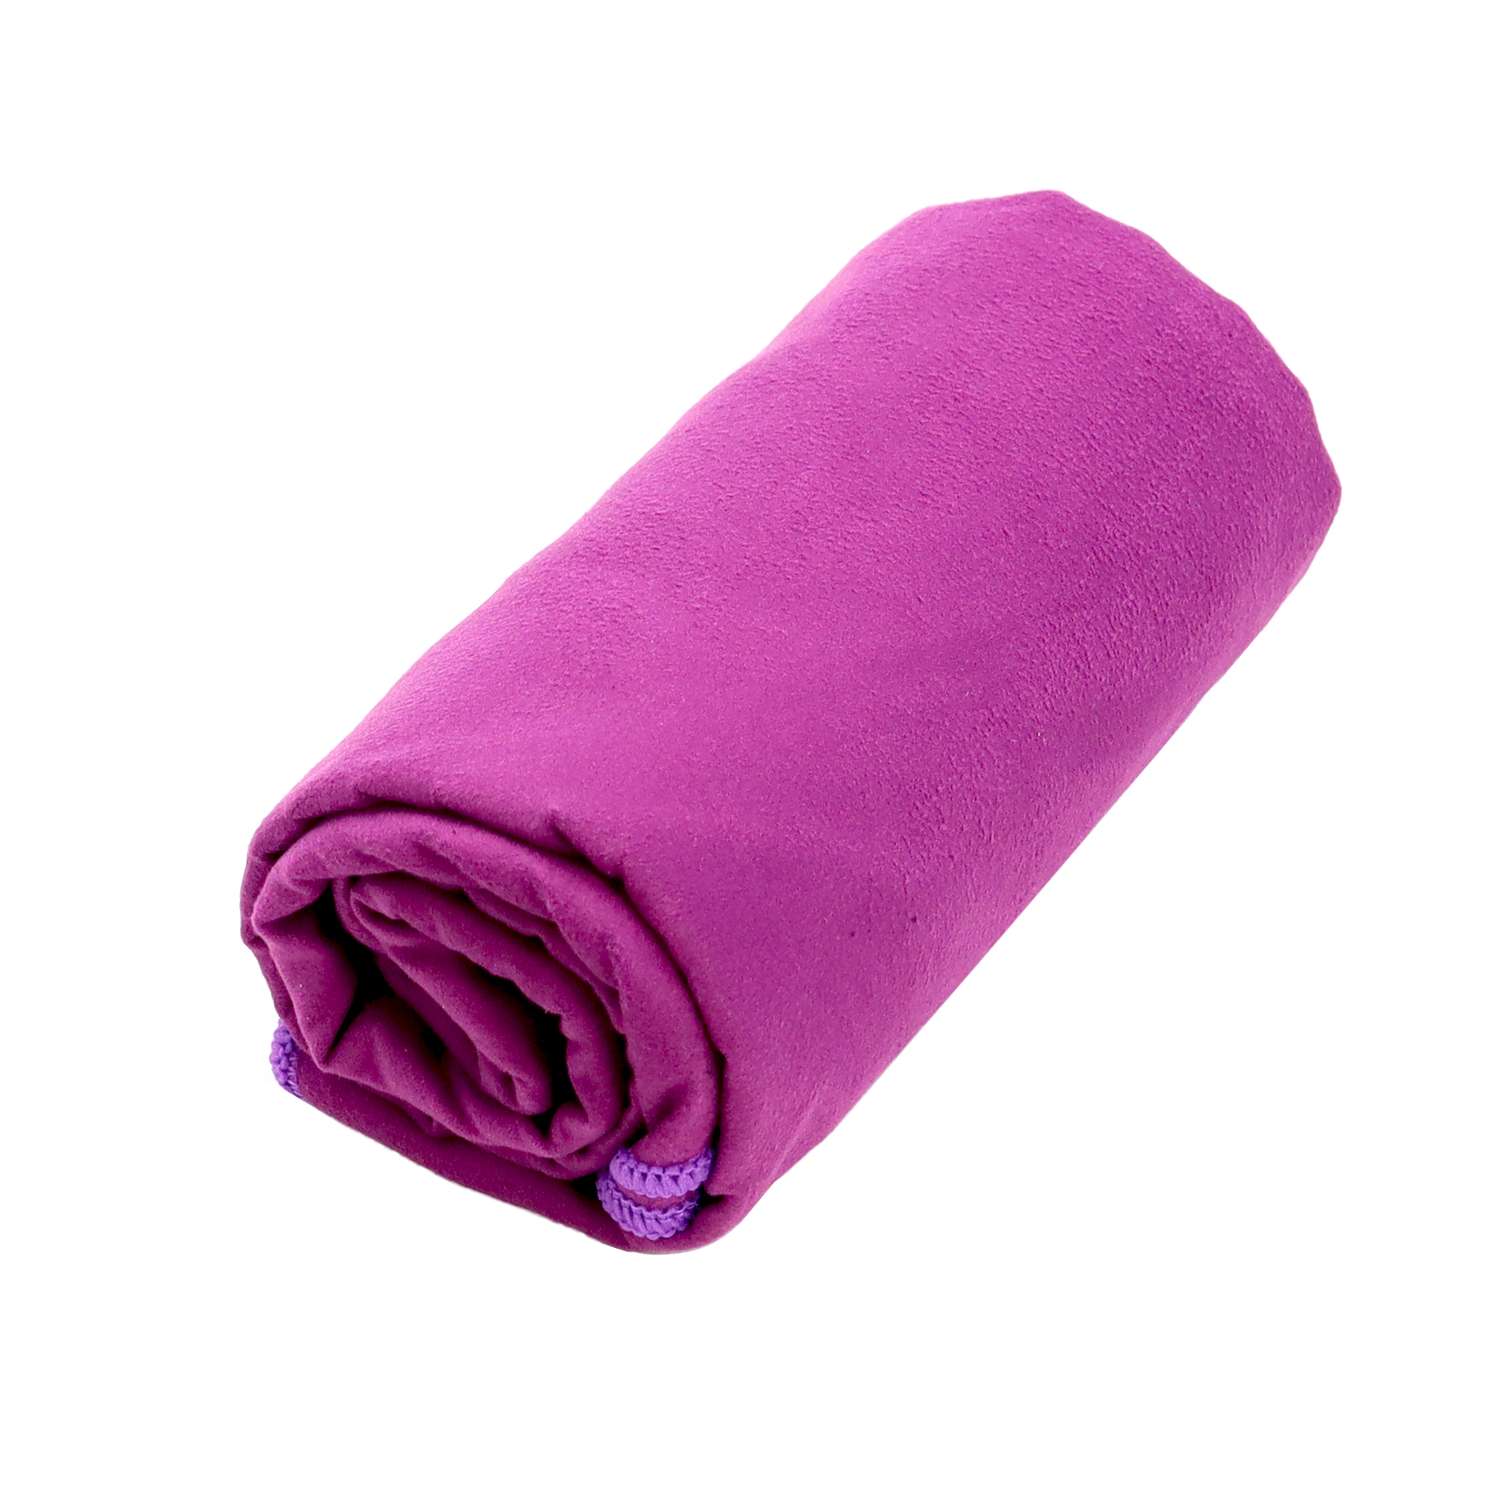 Полотенце ND Play спортивное из микрофибры 76*152 см цвет фиолетовый - фото 2